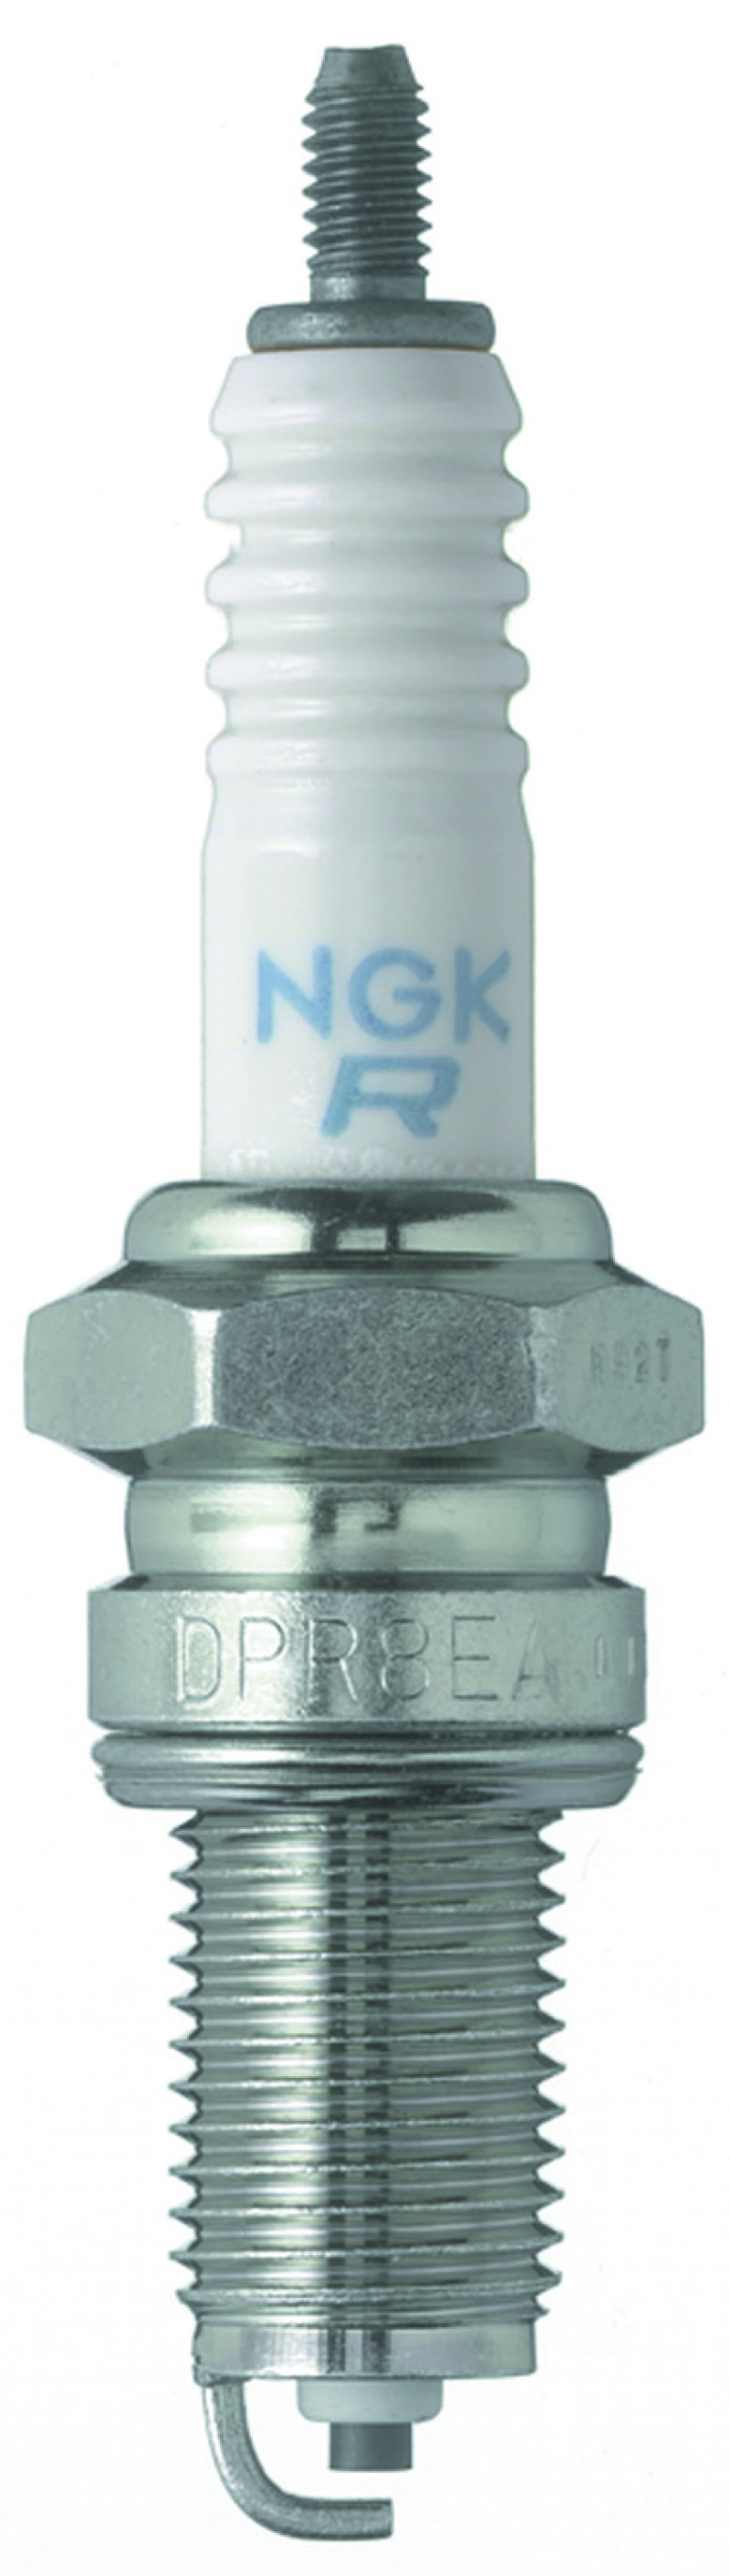 NGK Standard Spark Plug Box of 10 (DPR5EA-9) - 2887